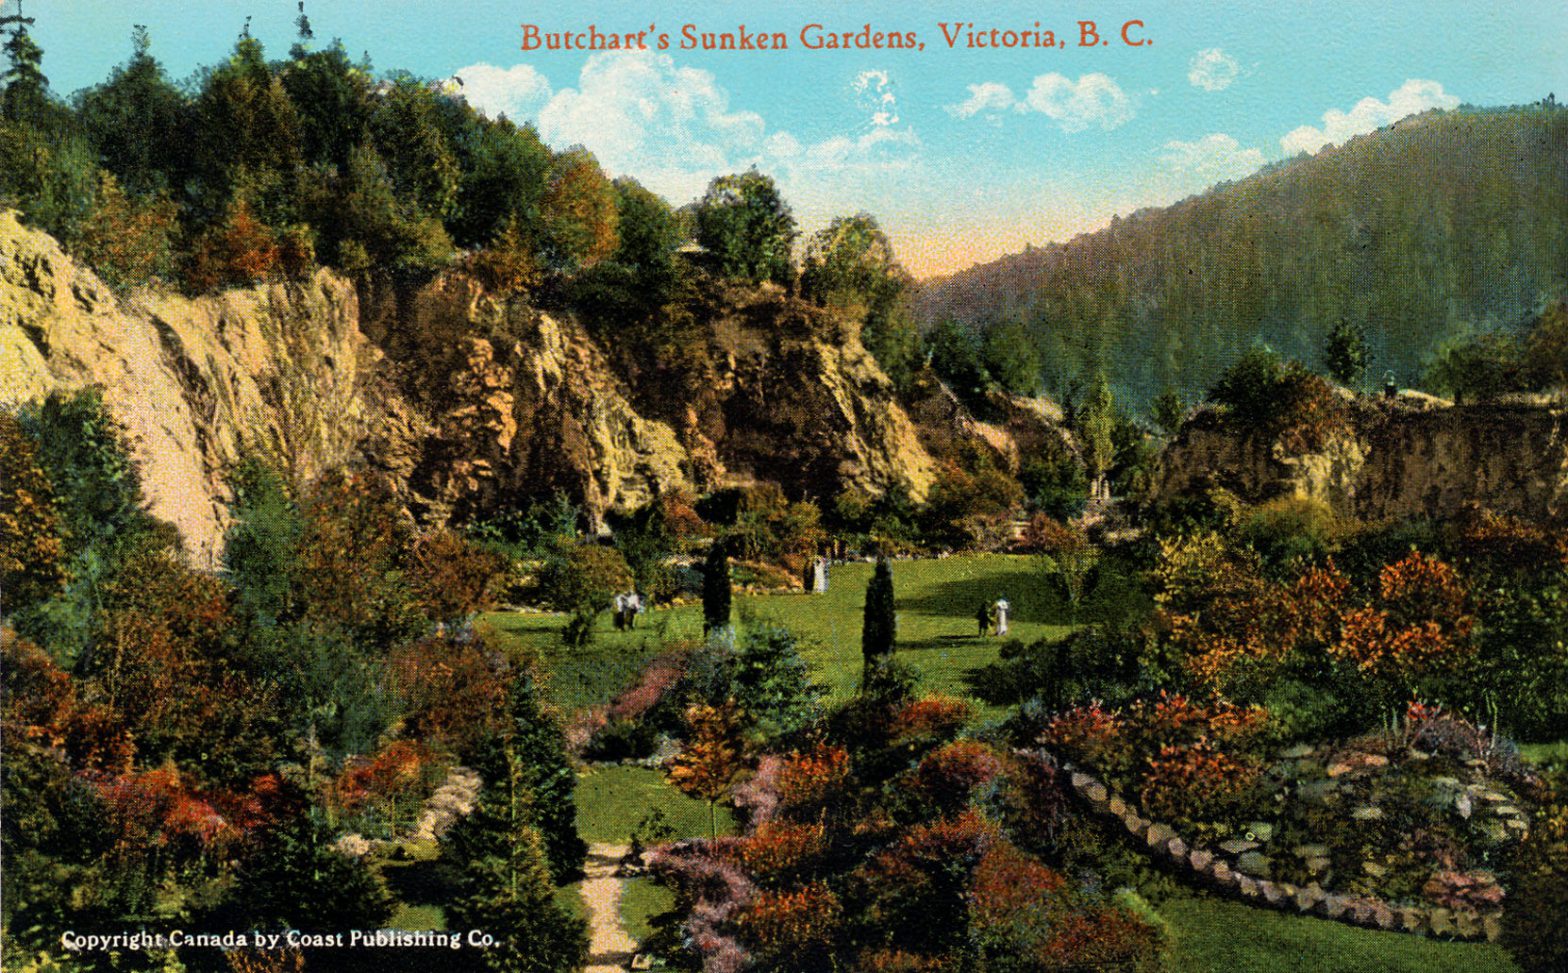 Postcard of the Sunken Garden, circa 1920 (Author's collection)